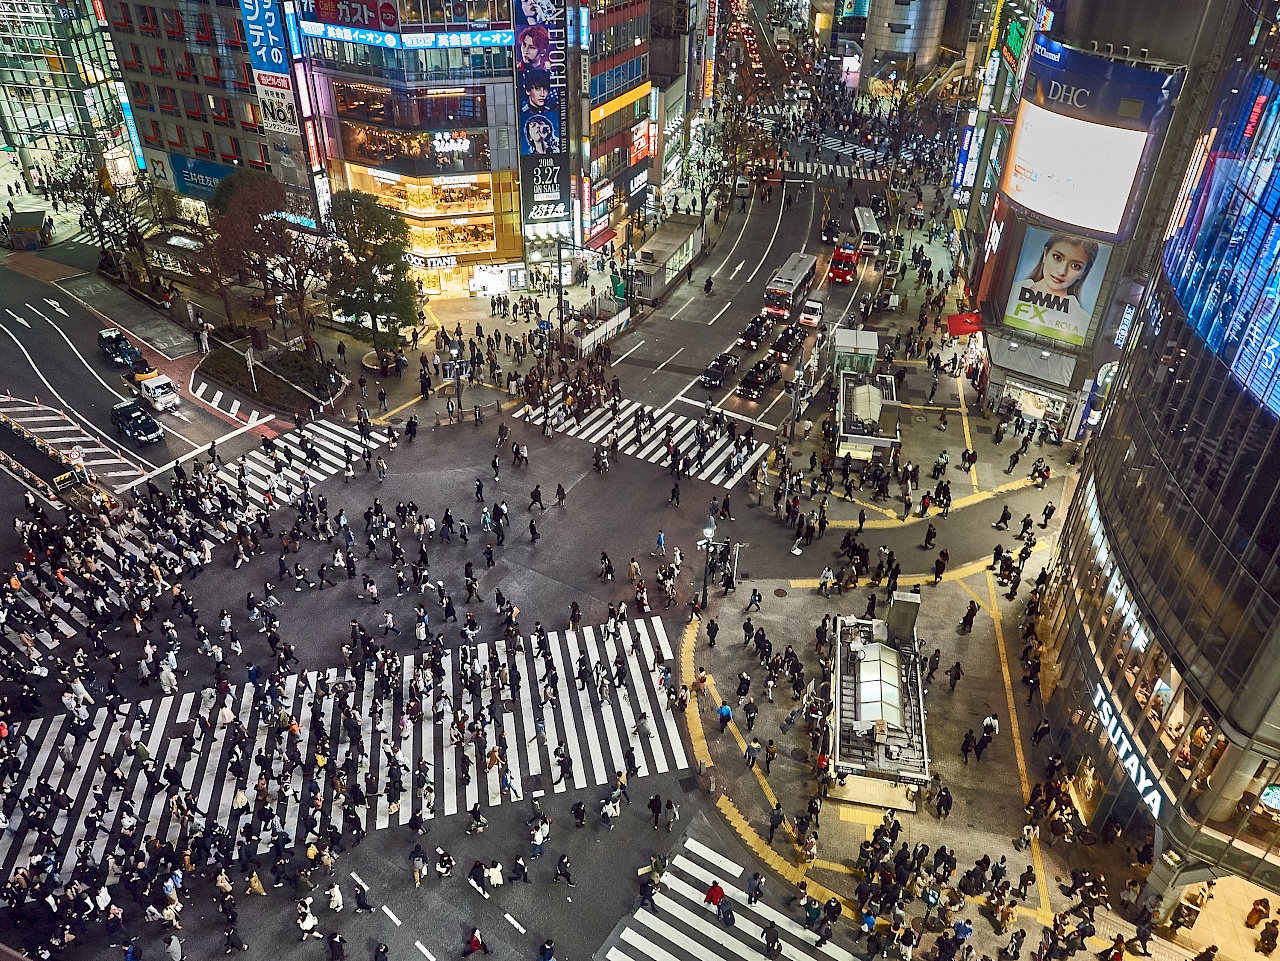 Aussicht auf die Shibuya-Kreuzung in Tokyo vom Magnet-Kaufhaus